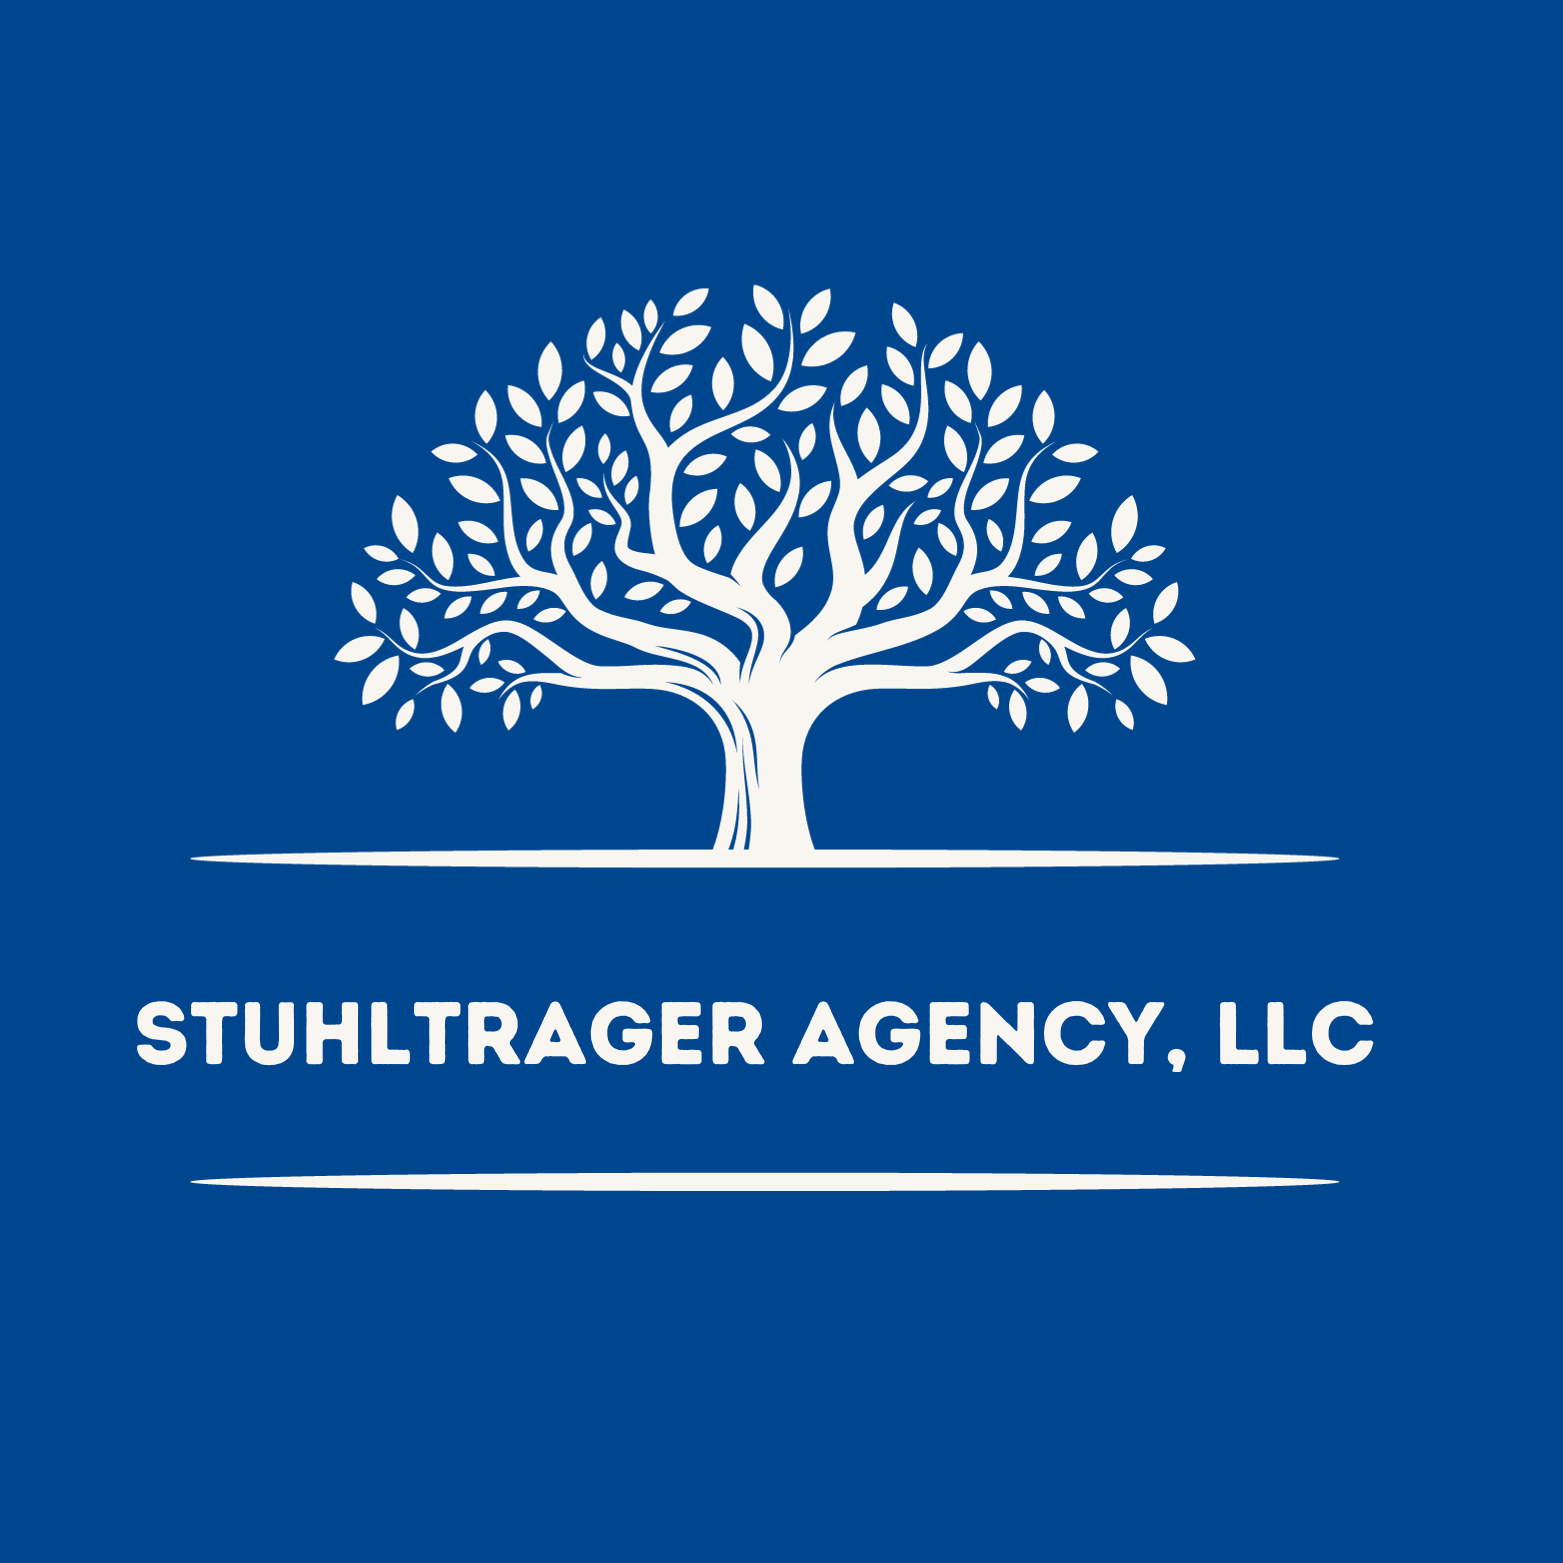 Stuhltrager Agency, LLC